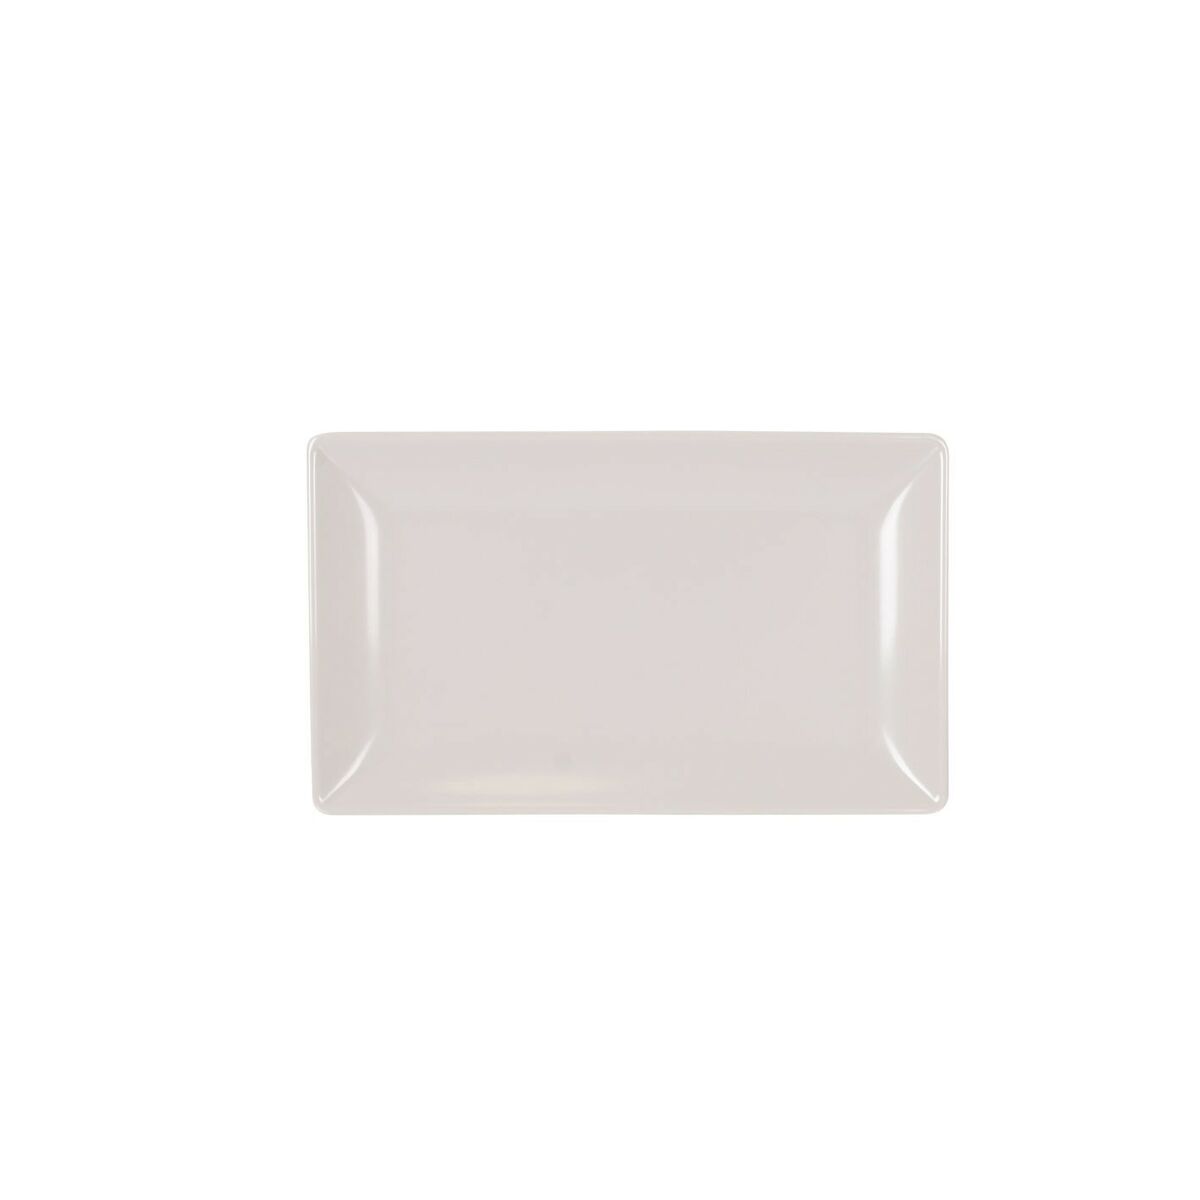 Δίσκος για σνακ La Mediterránea Λευκό 25 x 15 x 2 cm (12 Μονάδες)